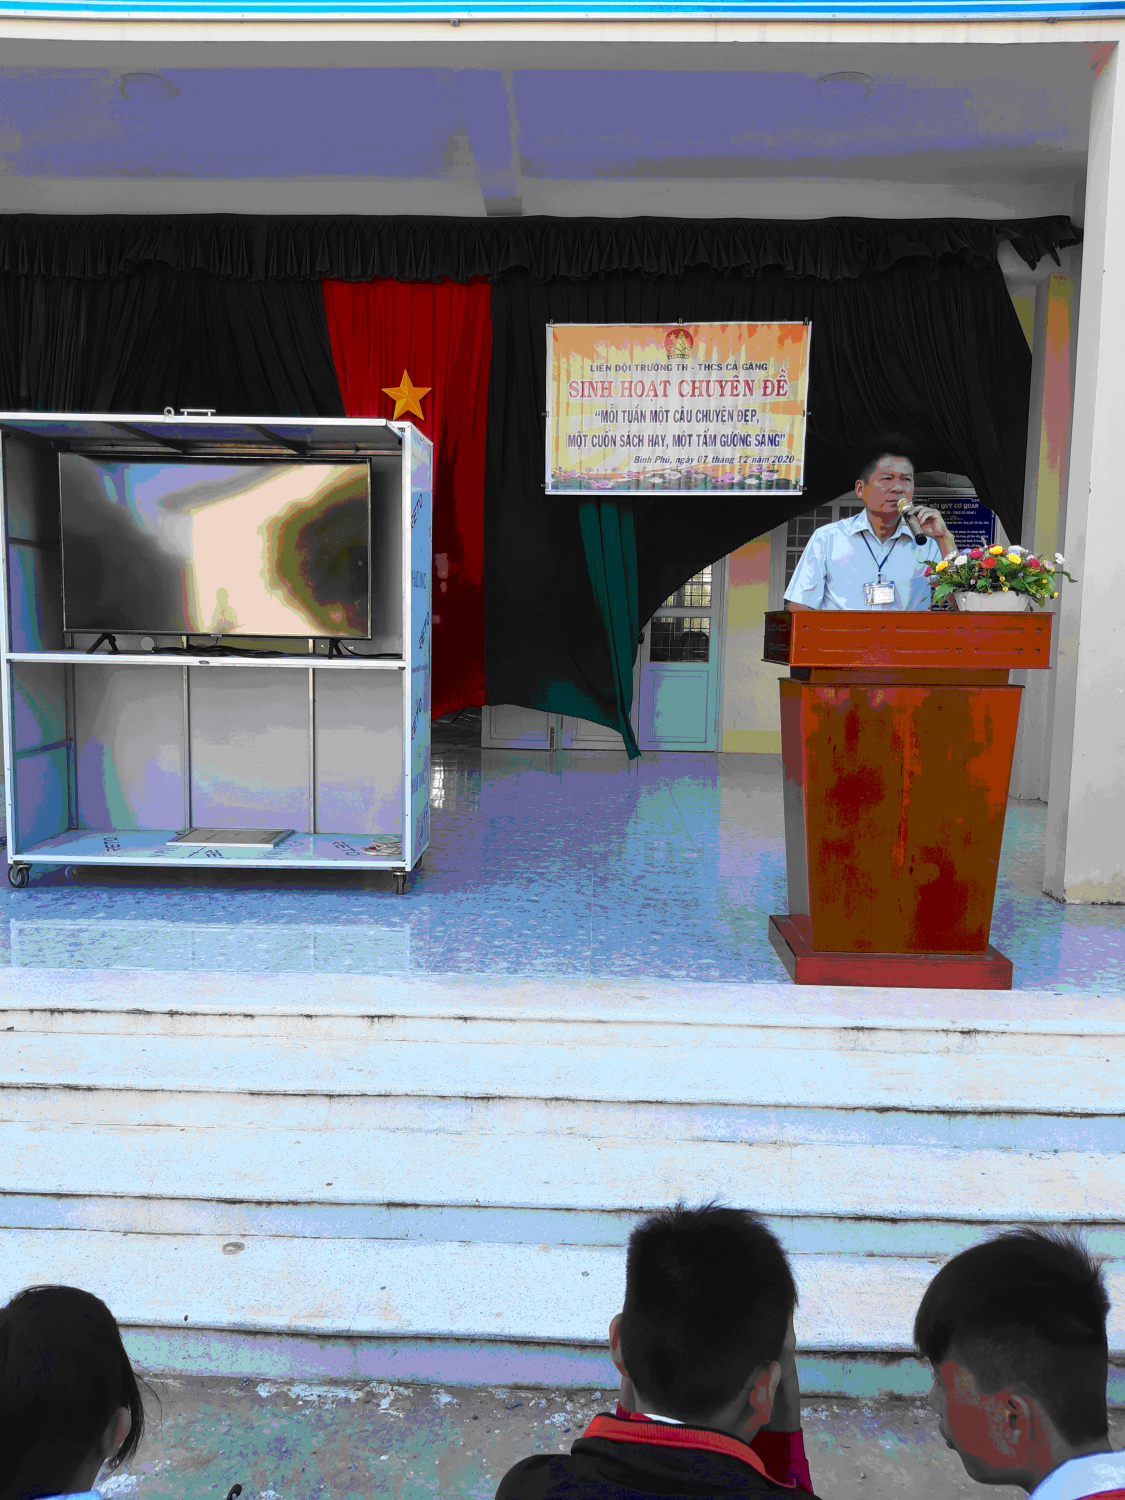 Thầy Nguyễn Văn Nơi, Hiệu trưởng nhà trường phát biểu nhắc nhỡ học sinh sau buổi sinh hoạt và tuyên truyền phòng dịch Covic 19